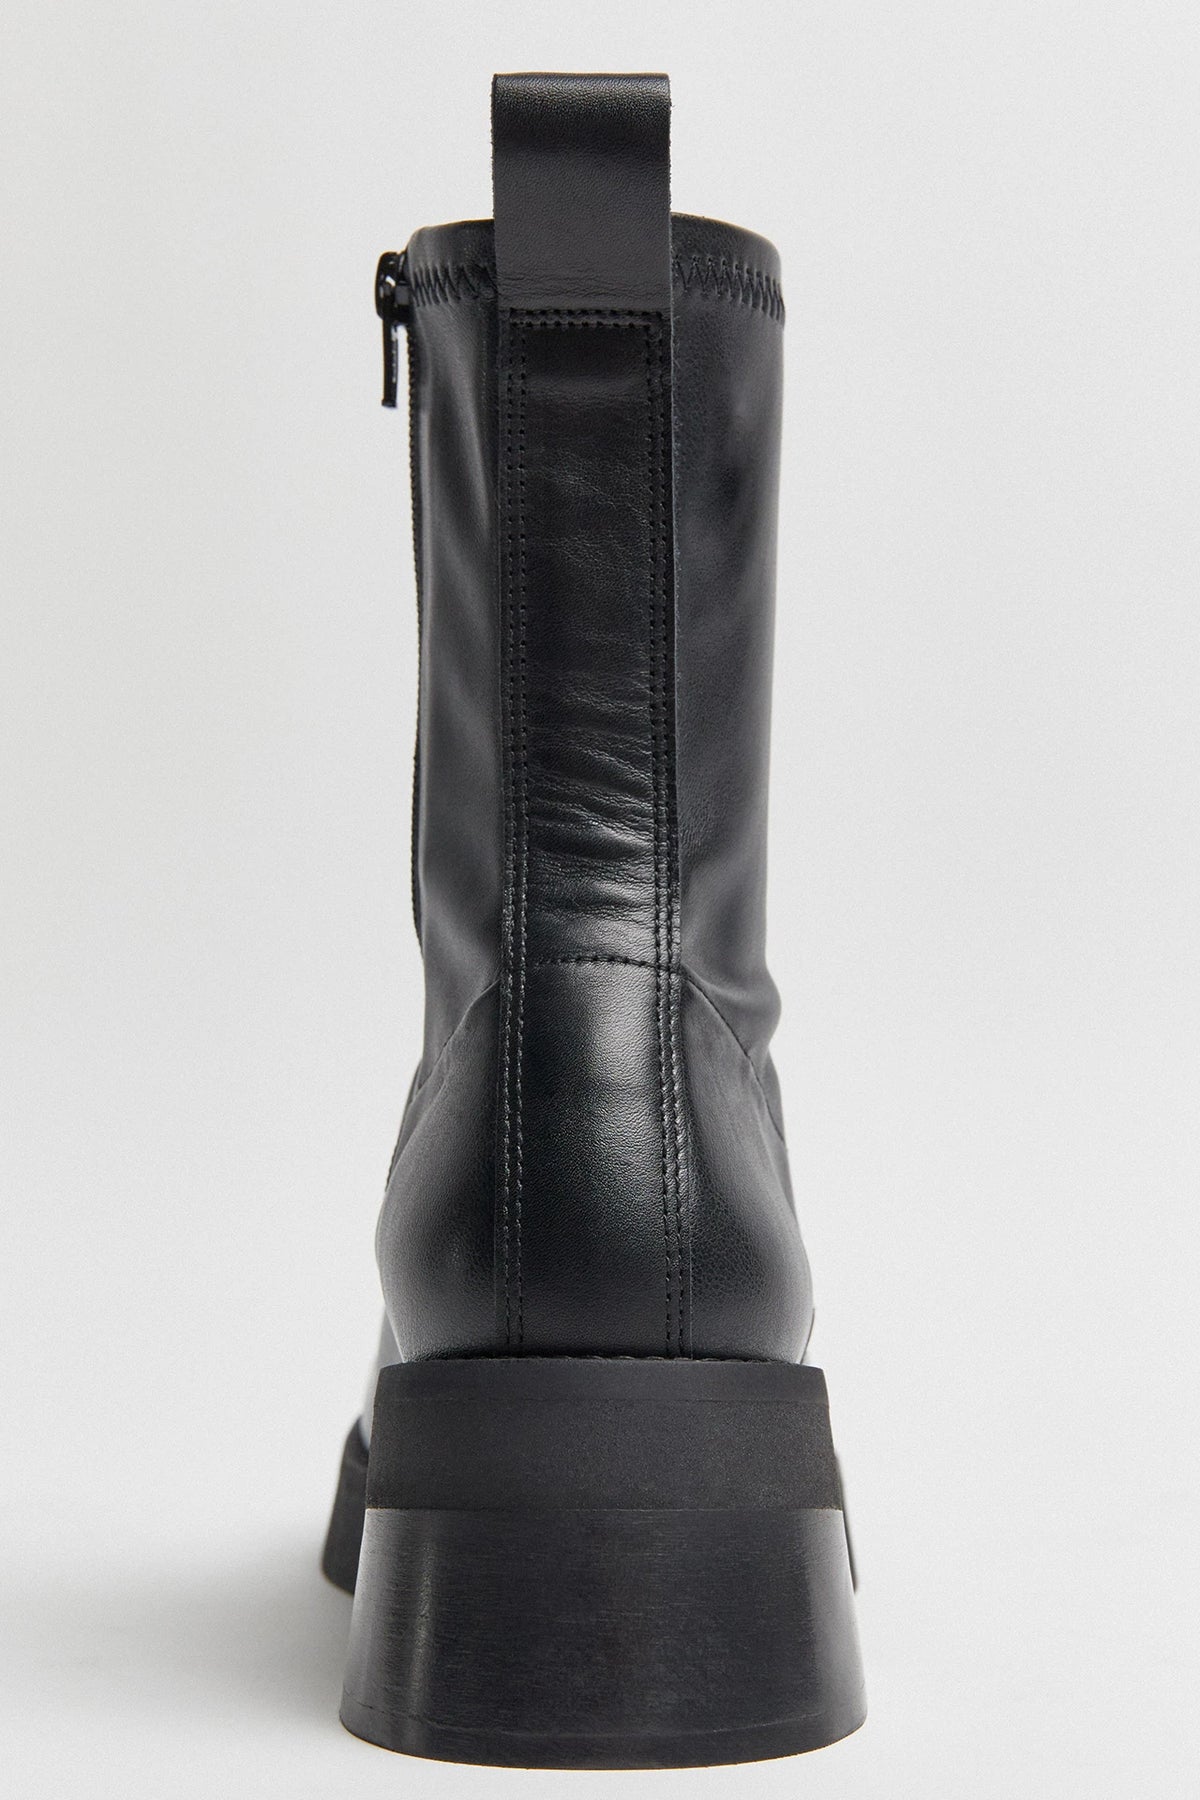 Miista Oliana Ankle Boots // Black